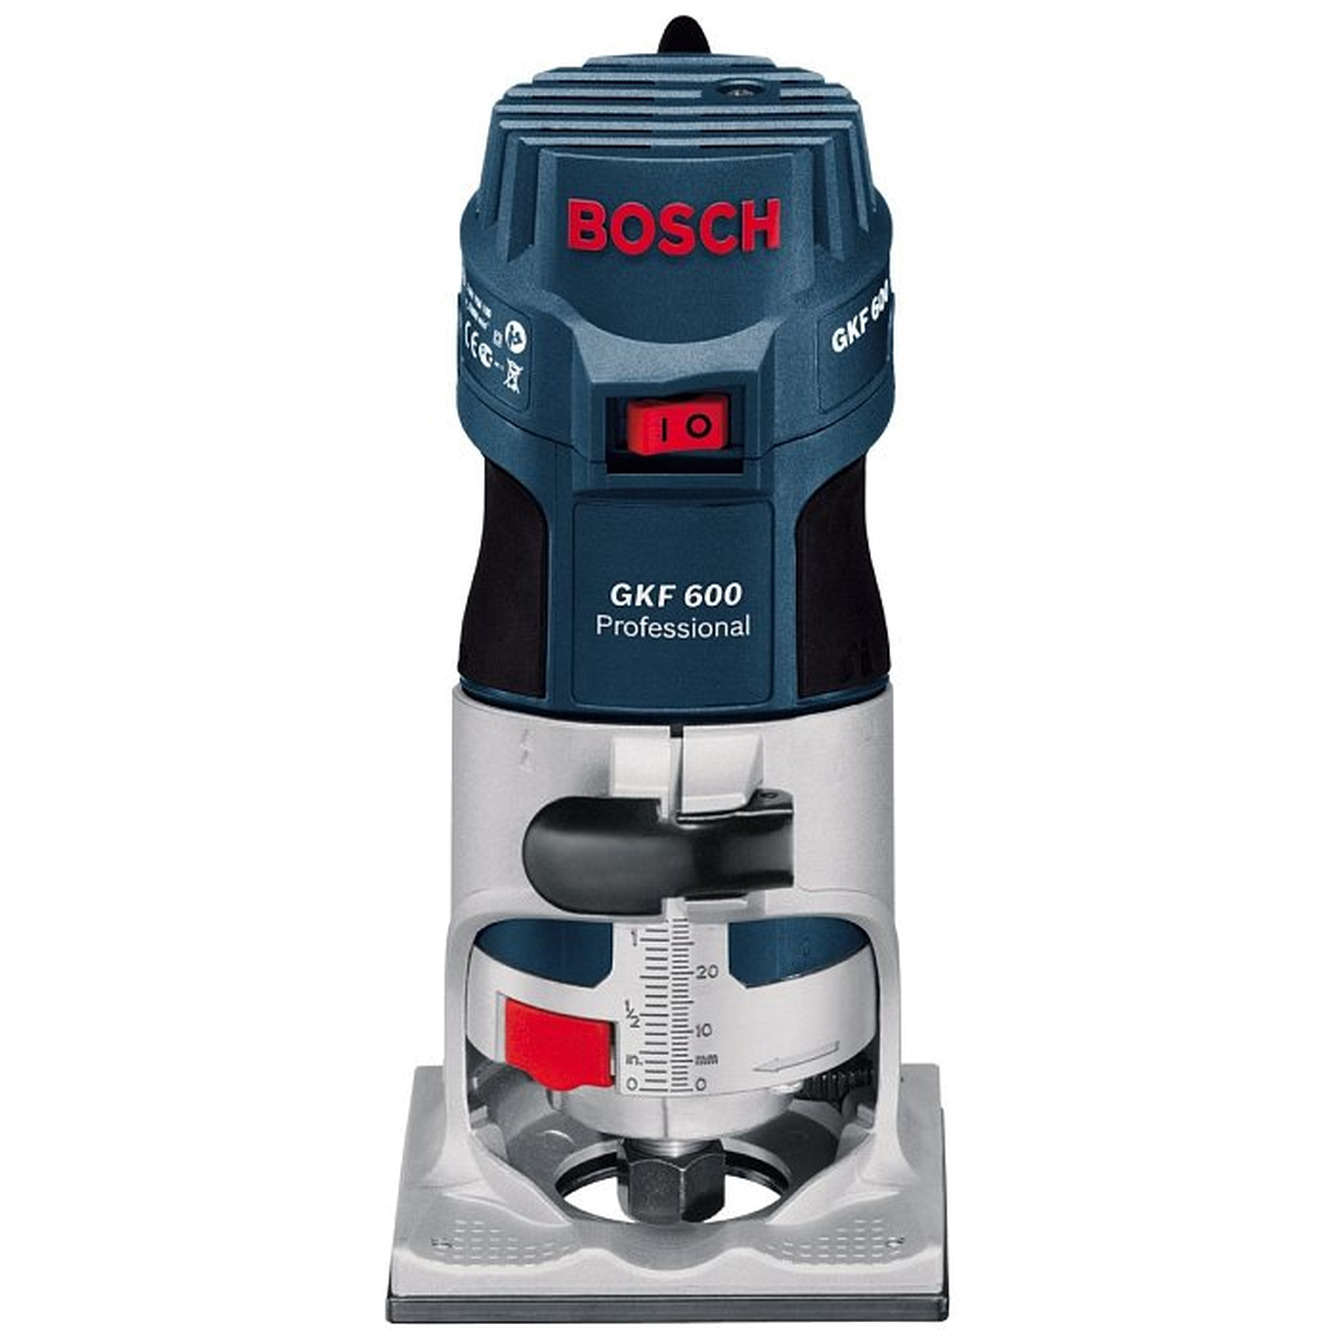 Фрезер Bosch GKF 600 (оснастка) 060160А101